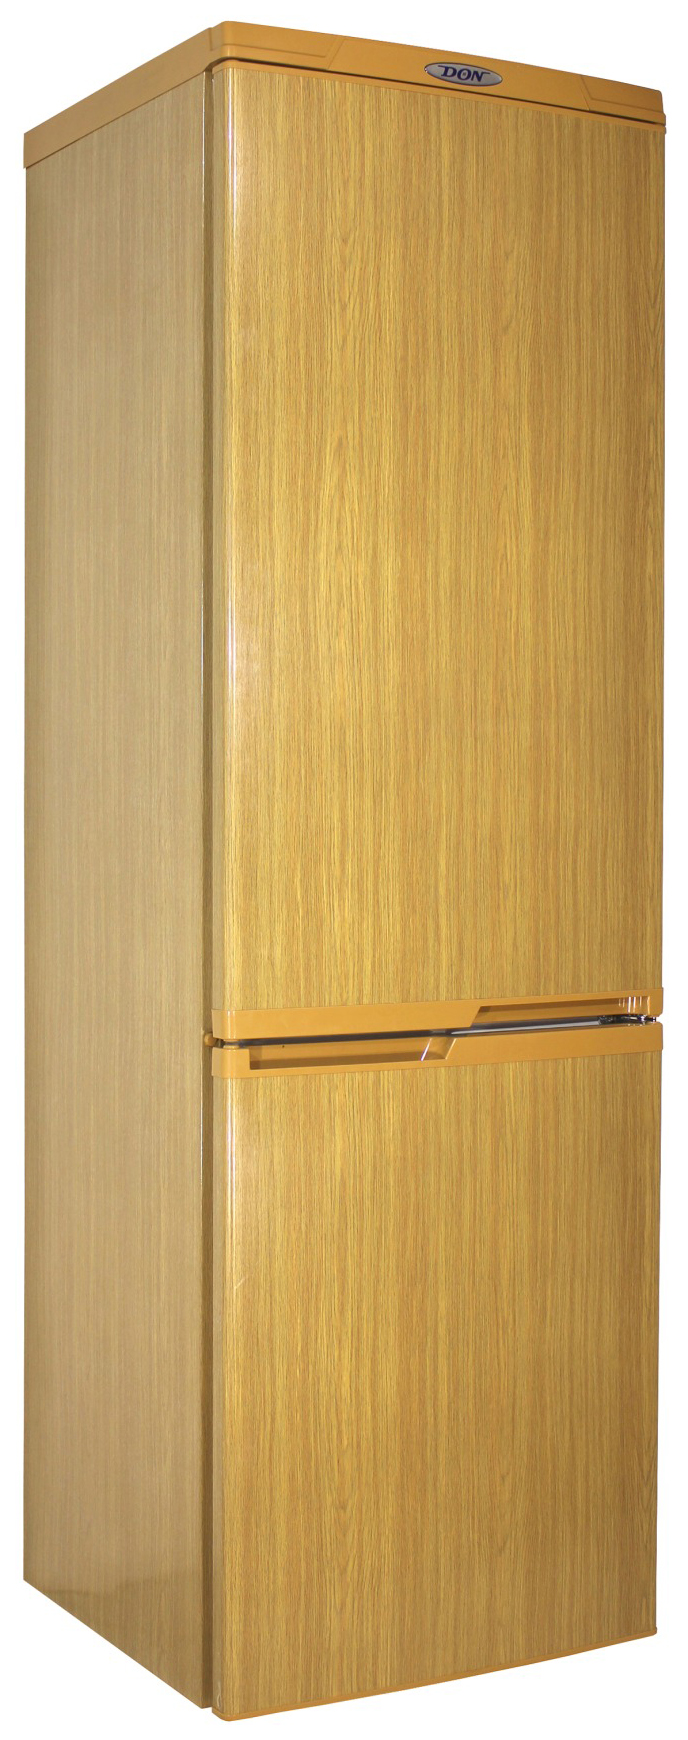 Холодильник DON R 291 DUB коричневый холодильник gorenje nrk6192acr4 коричневый